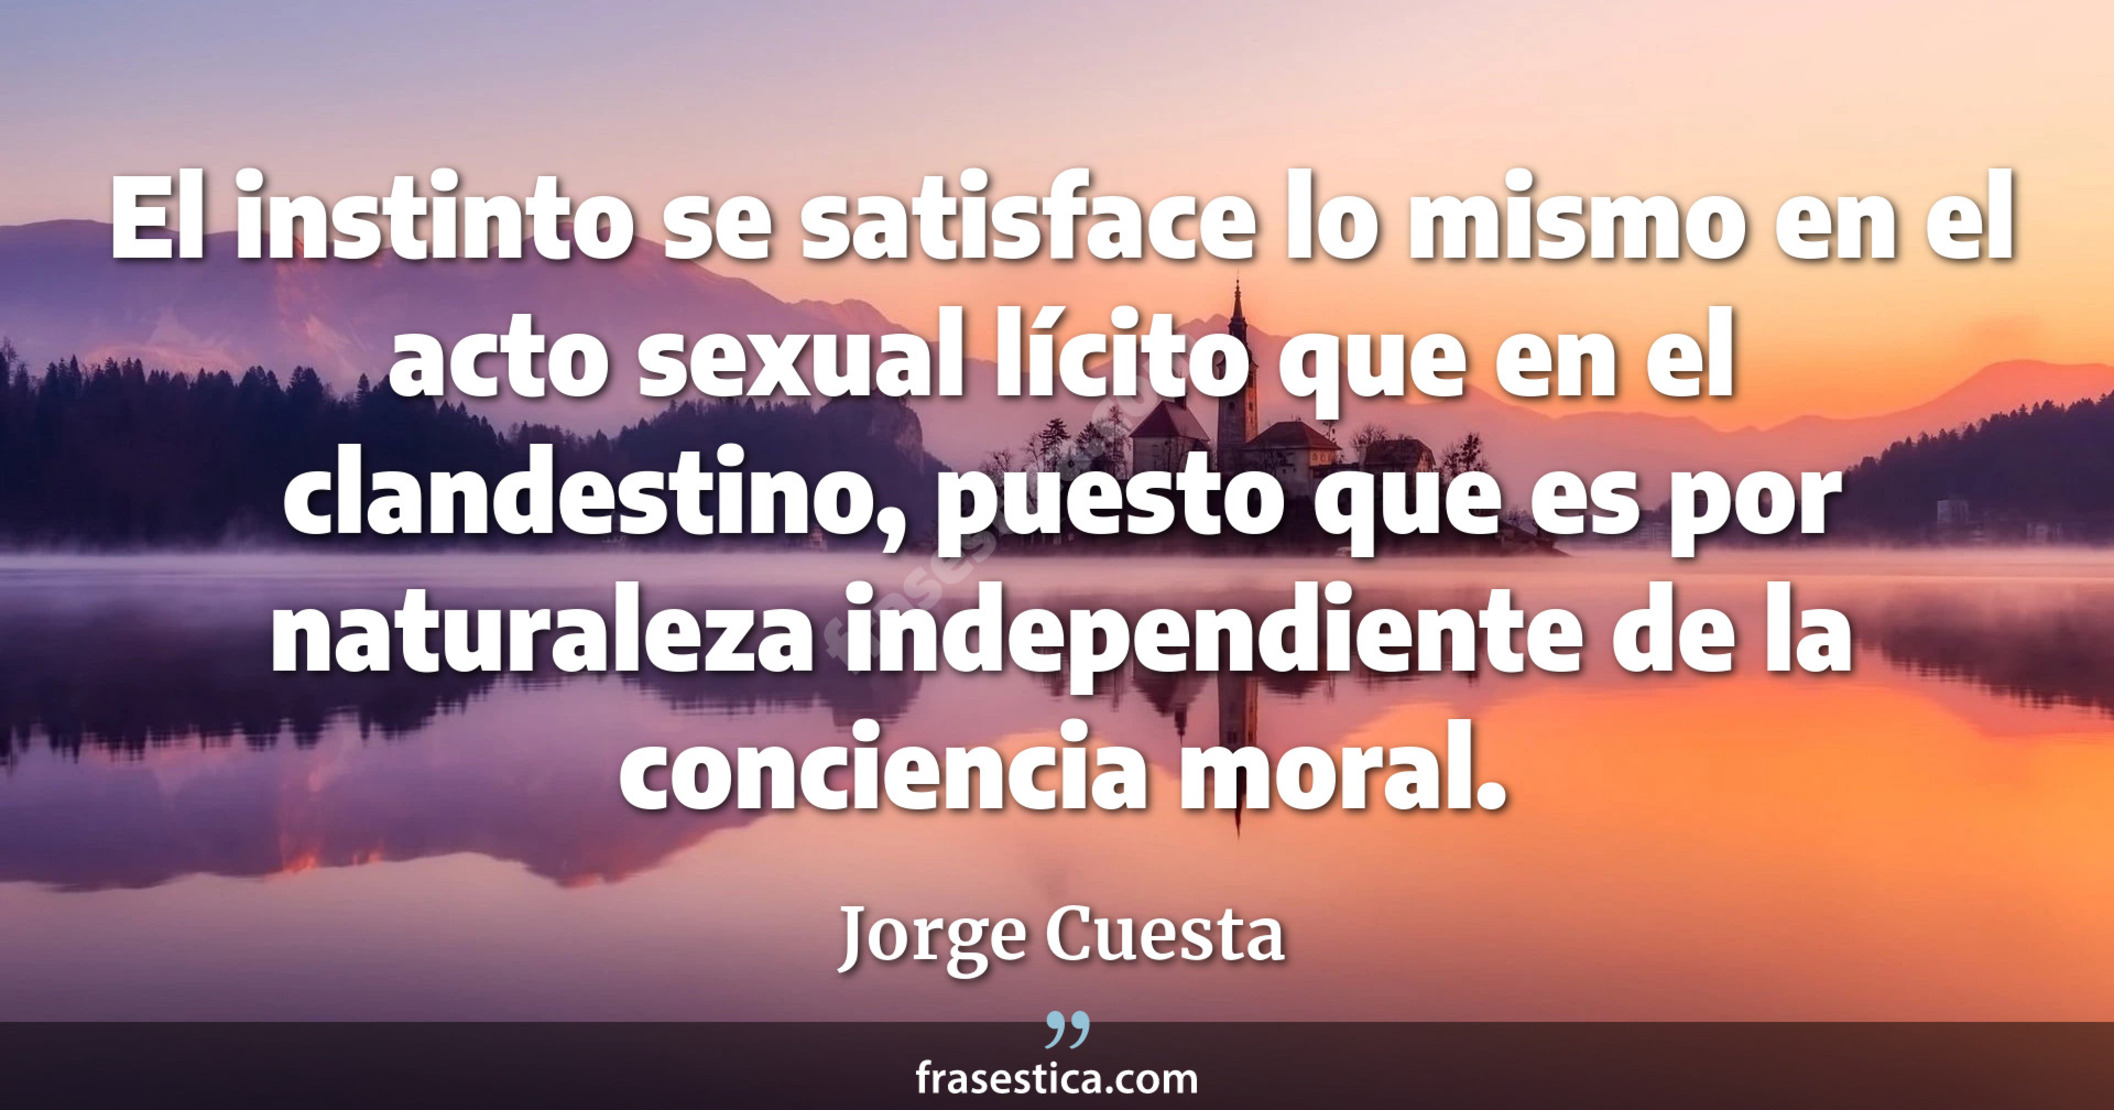 El instinto se satisface lo mismo en el acto sexual lícito que en el clandestino, puesto que es por naturaleza independiente de la conciencia moral. - Jorge Cuesta